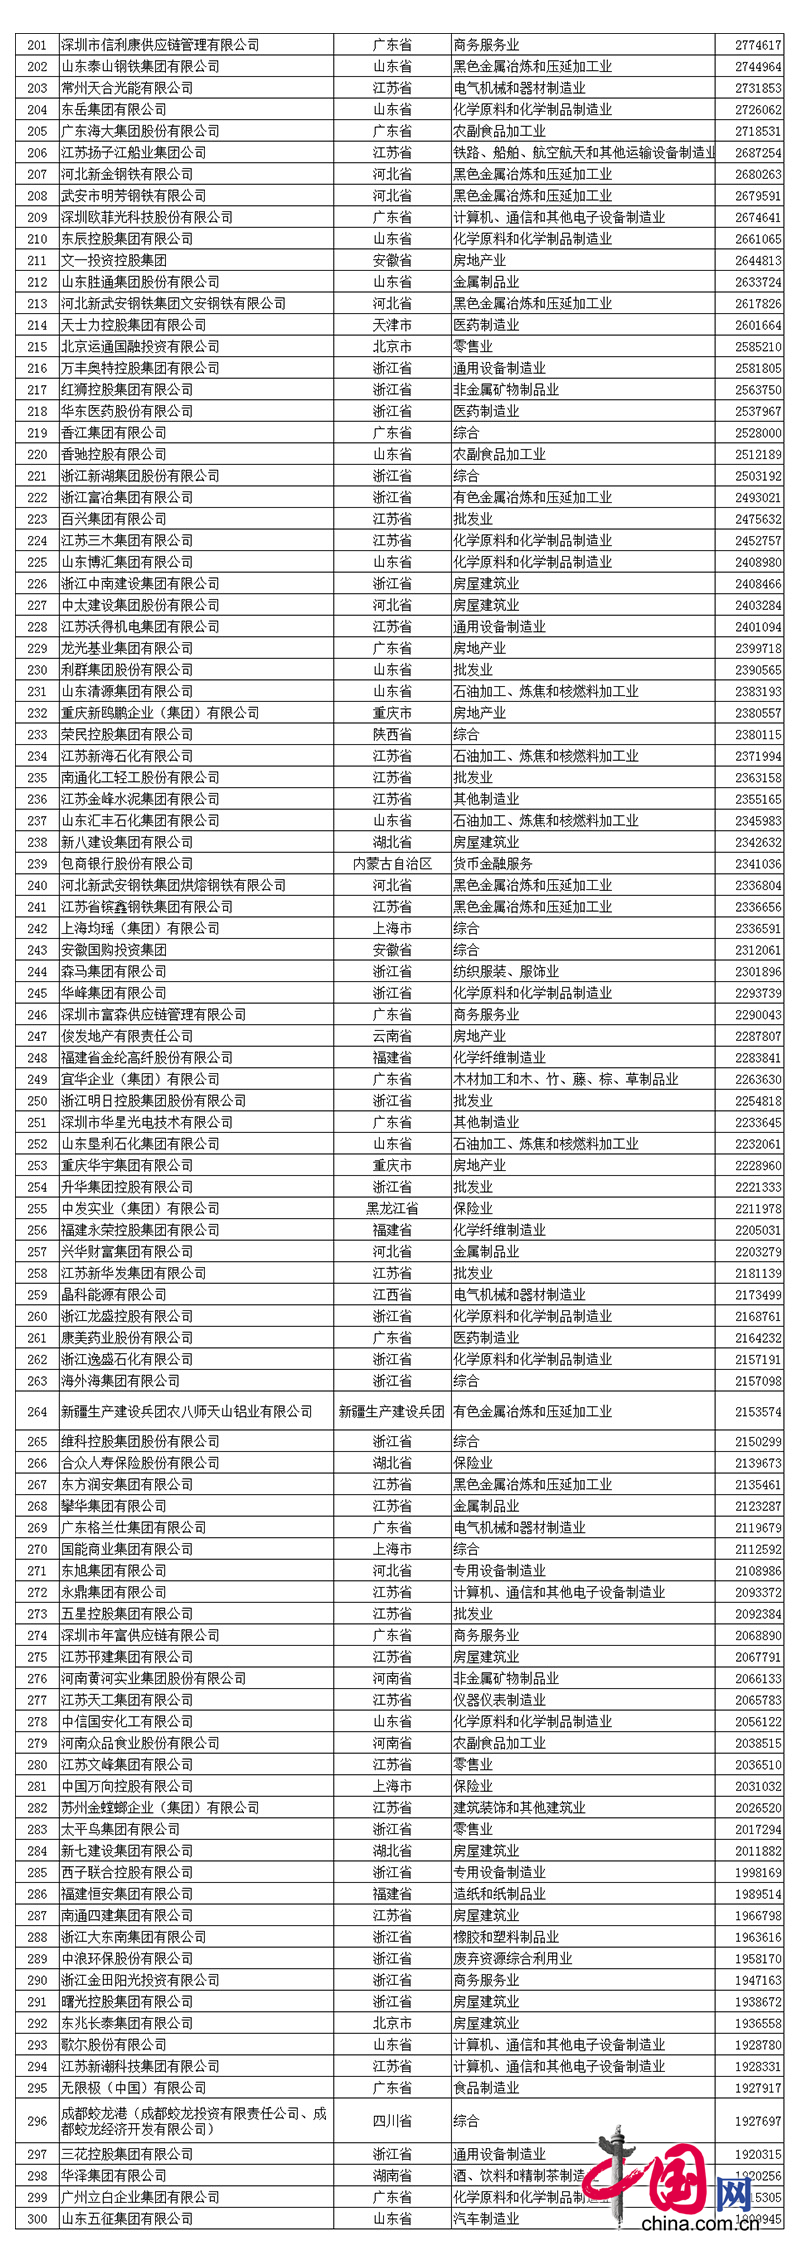 2017中国民营企业500强名单中j9.com(中国区)官方网站排名第390名